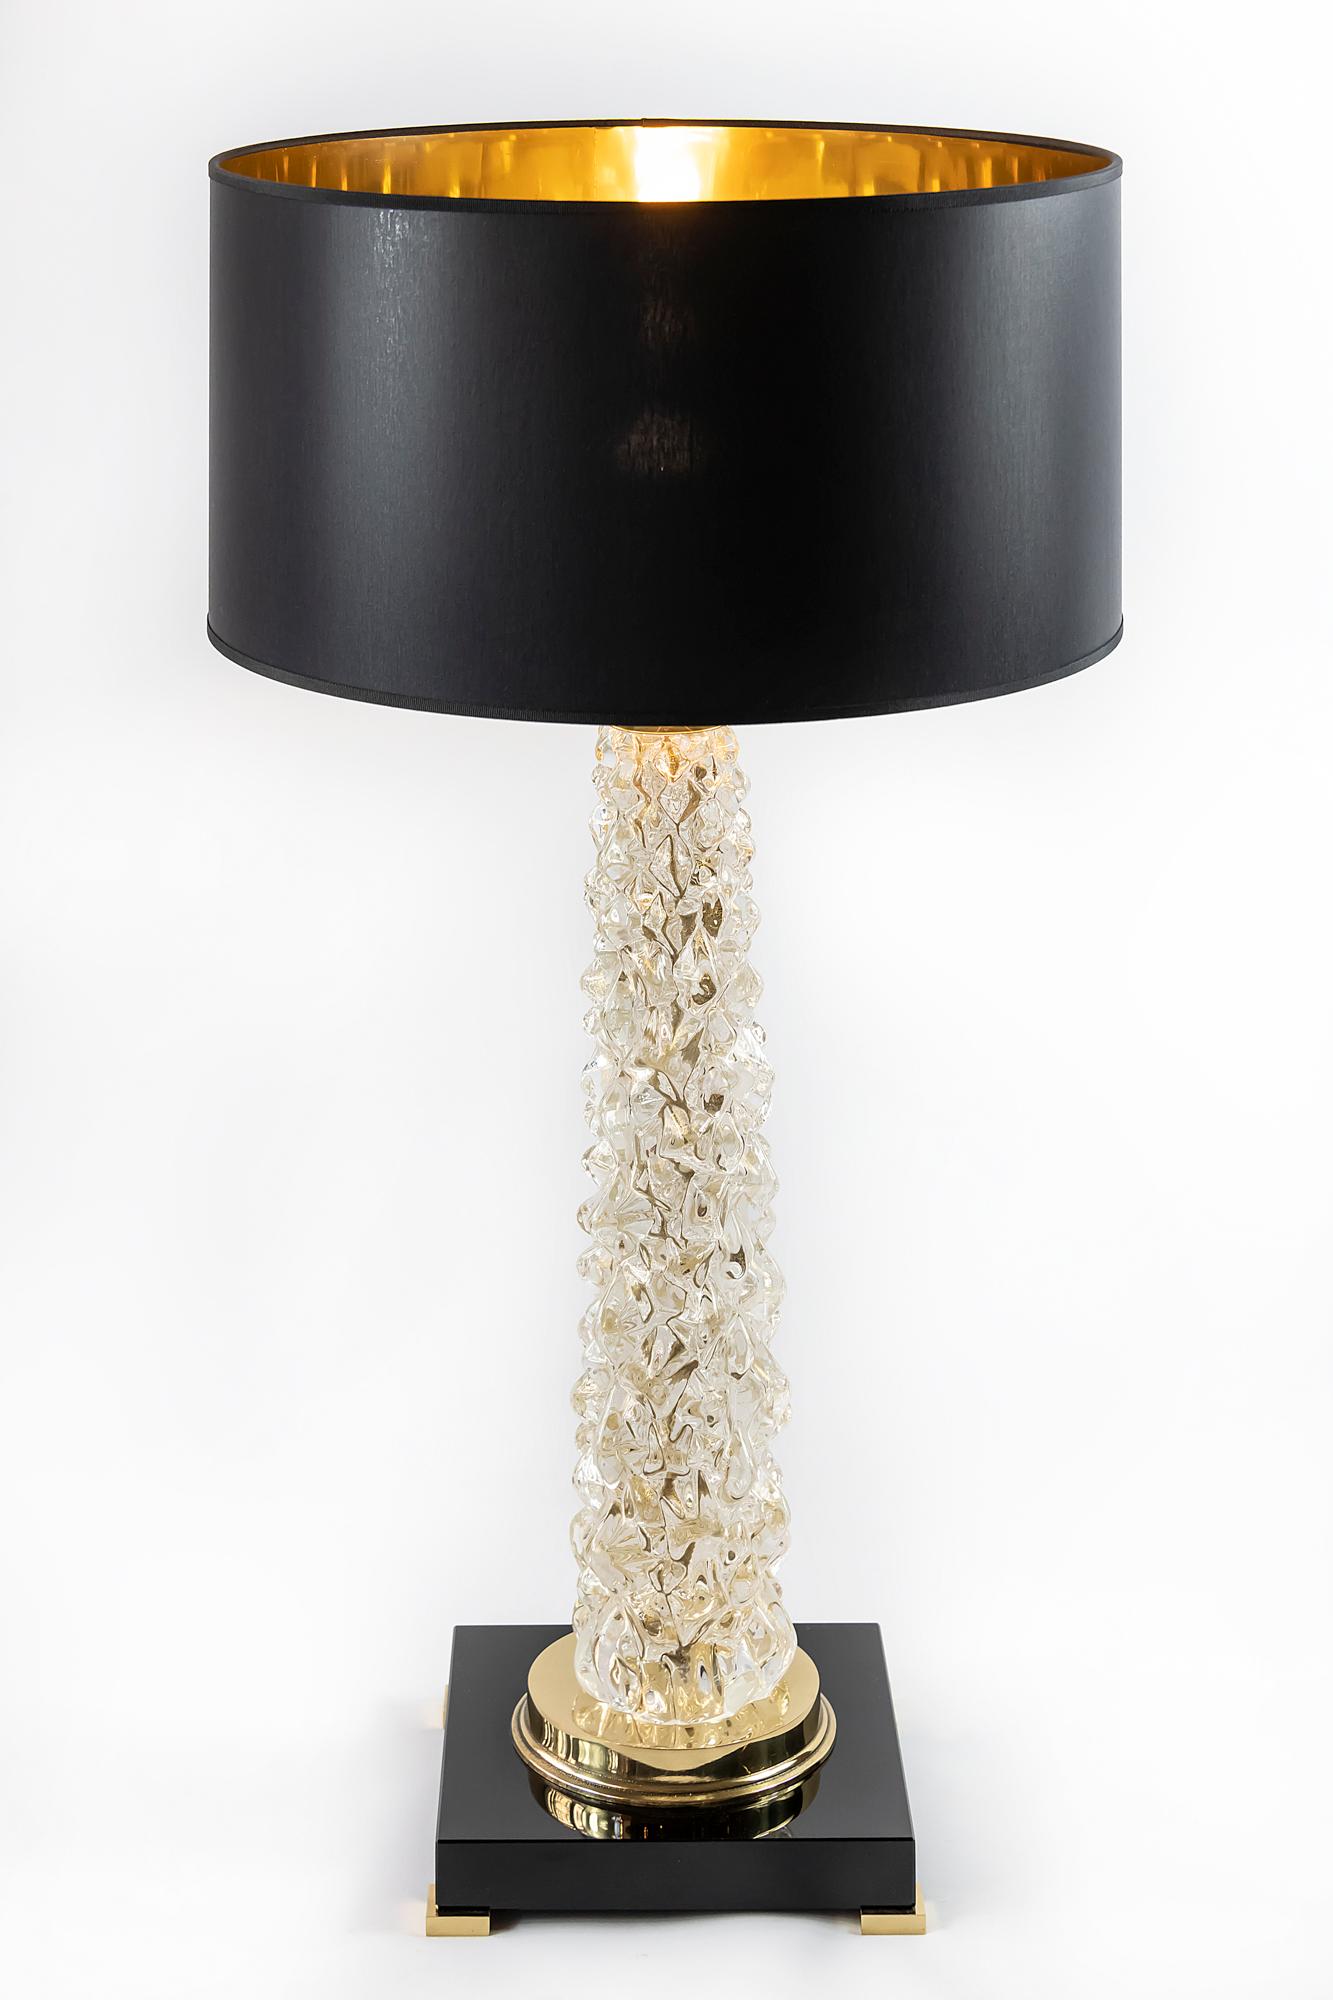 Dieses Paar italienischer Tischlampen ist aus transparentem Muranoglas gefertigt. Der Sockel besteht aus rechteckigem, dickem schwarzem Glas mit kleinen Messingfüßen. Verziert mit polierten Messingdetails. Beide Lampen sind mit neuen satinierten